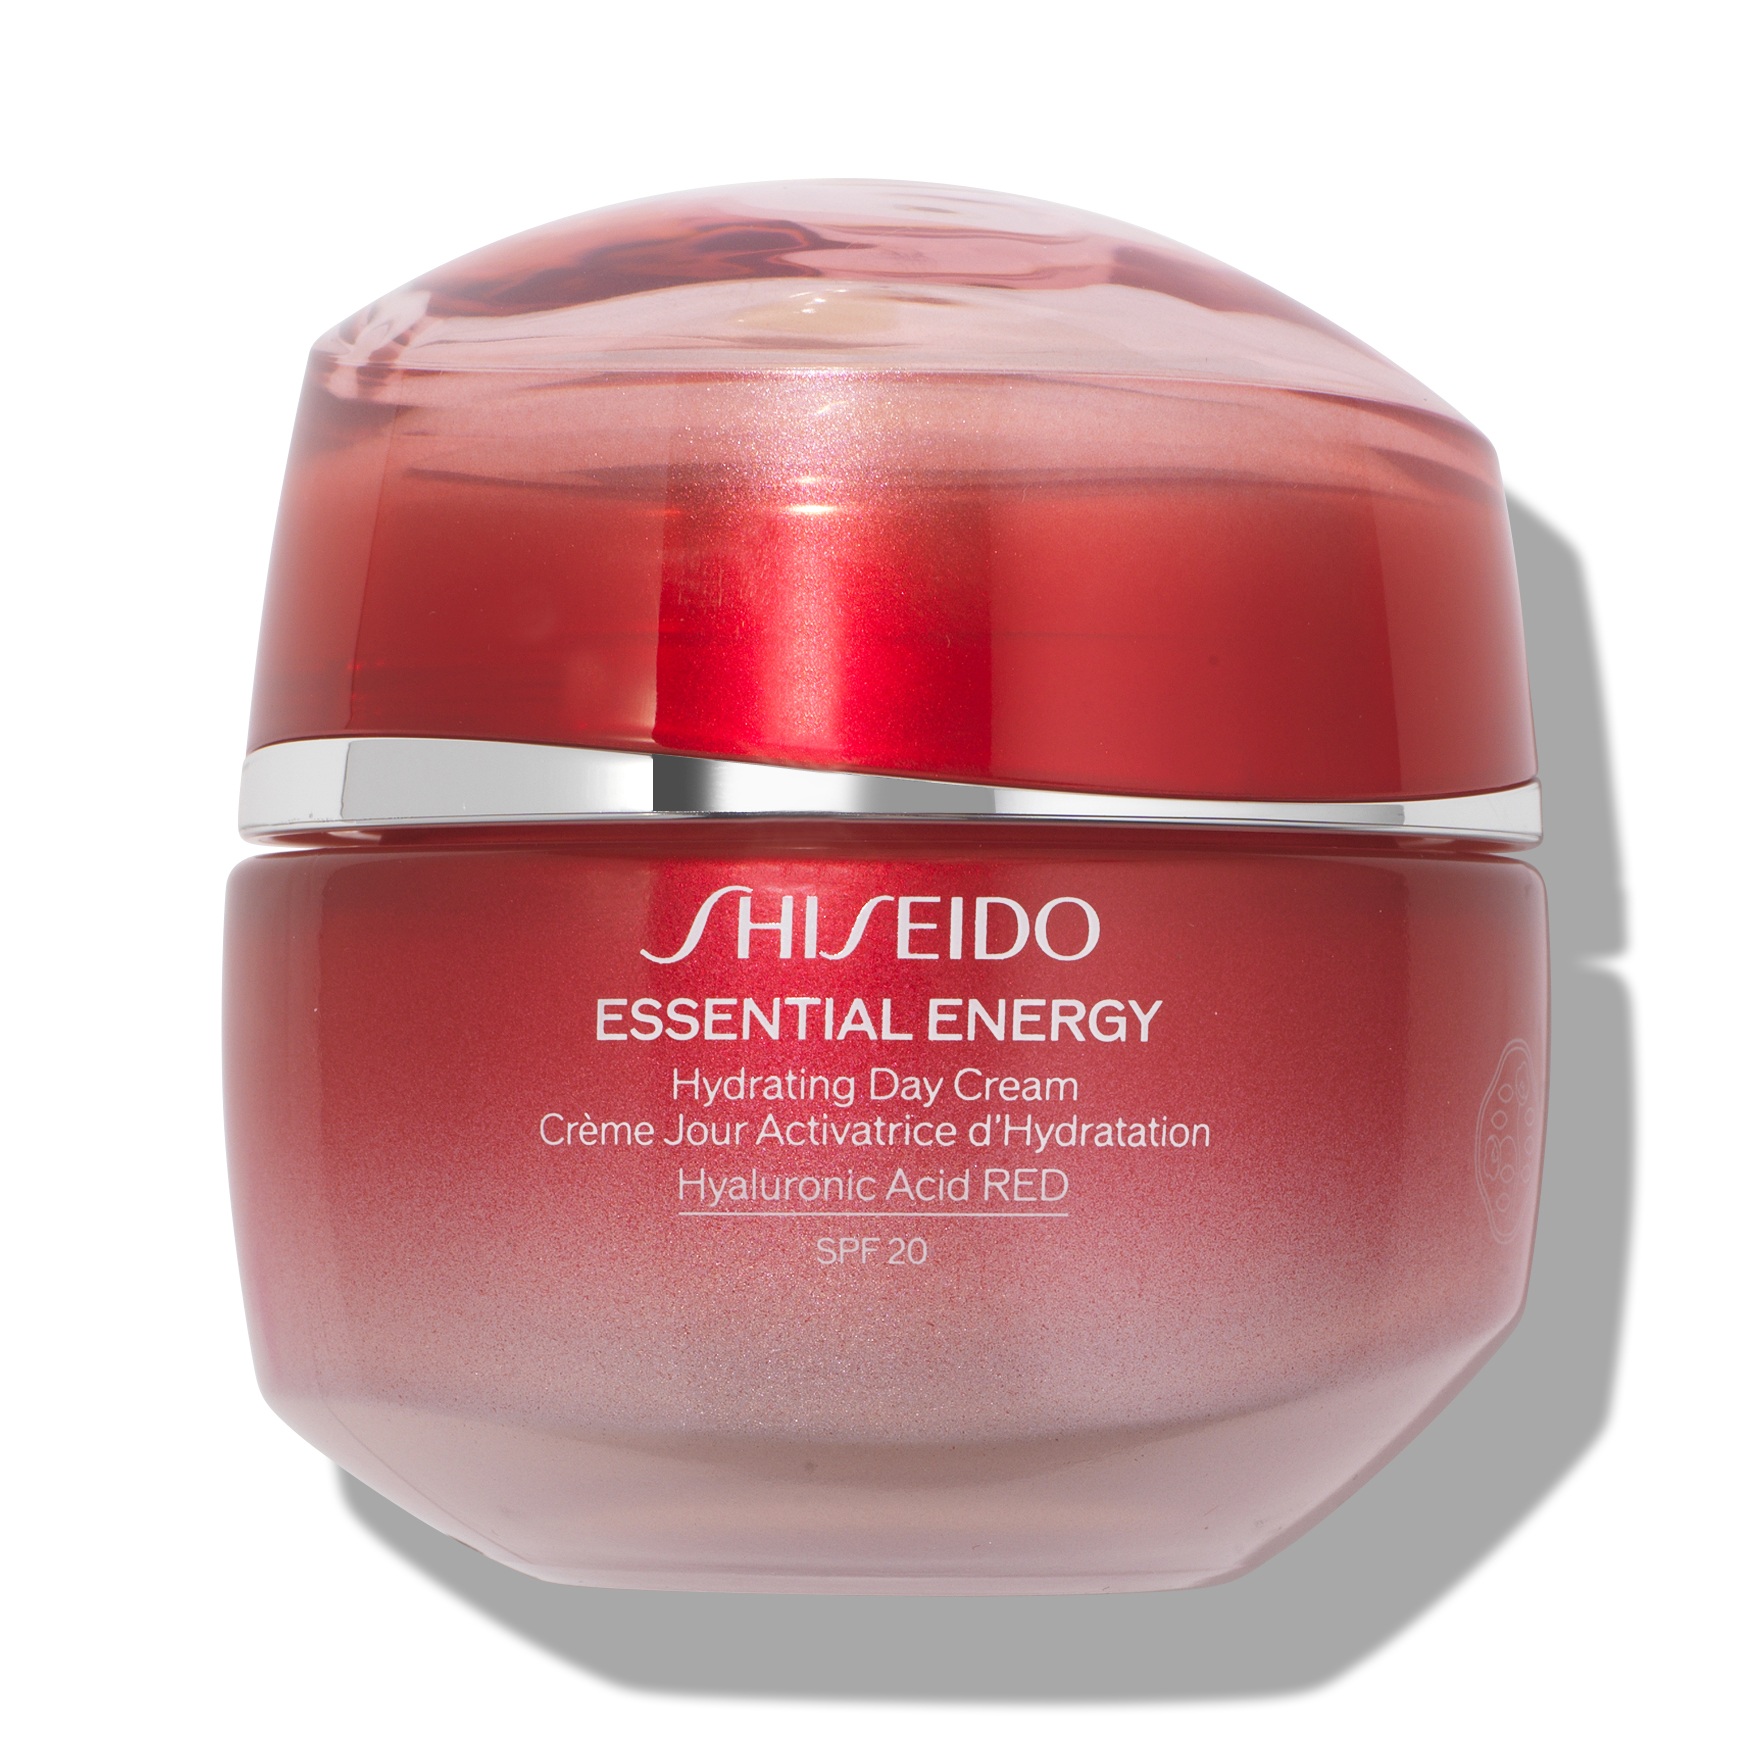 Шисейдо Essential Energy Hydrating Cream. Крем Shiseido Essential Energy. Shiseido Essential Energy. Shiseido Advanced Essential Energy логотип.